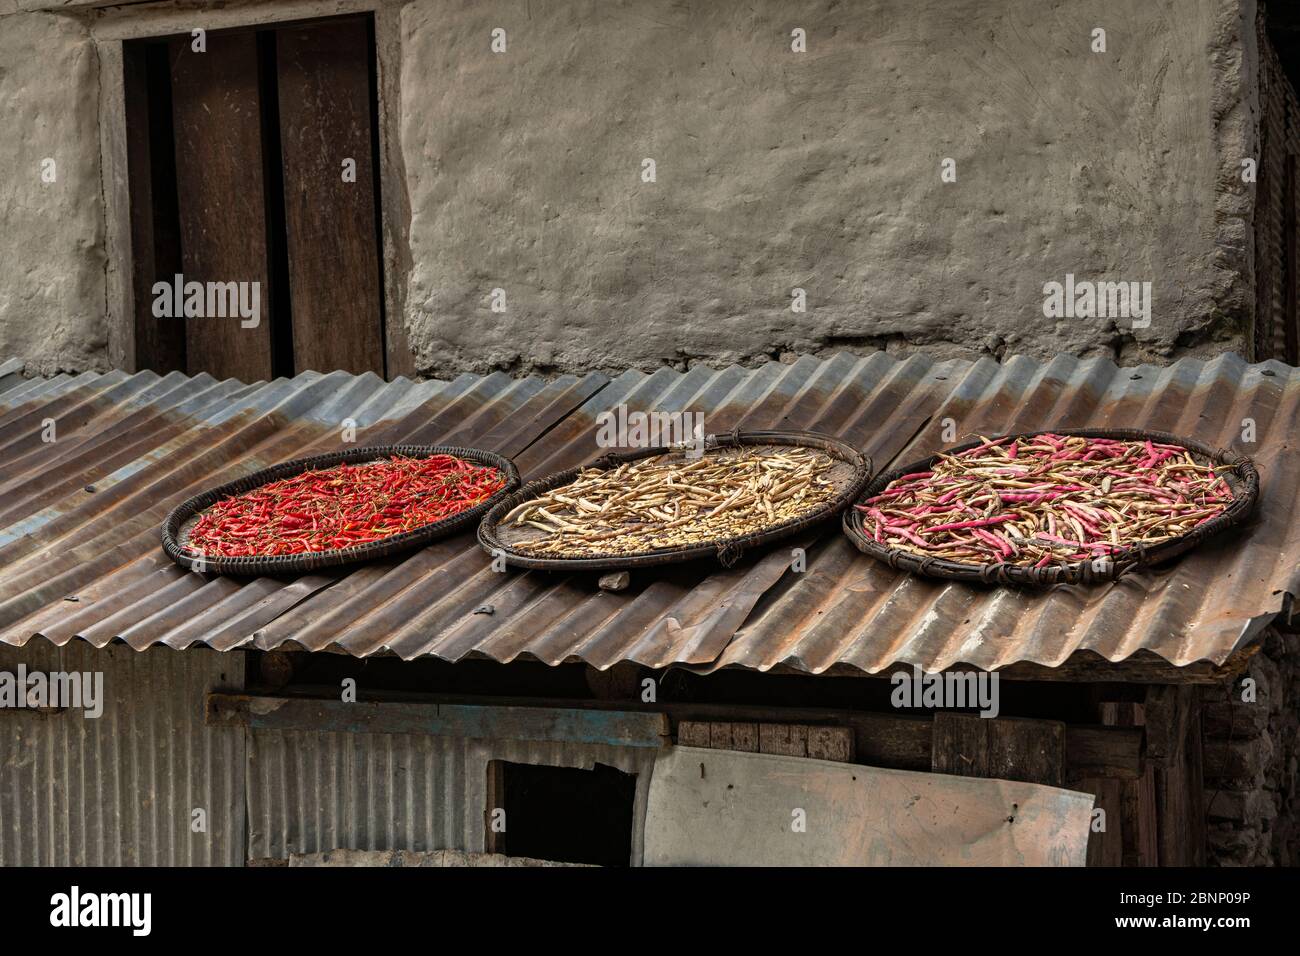 Gousses de piment et haricots secs sur un toit au Népal Banque D'Images